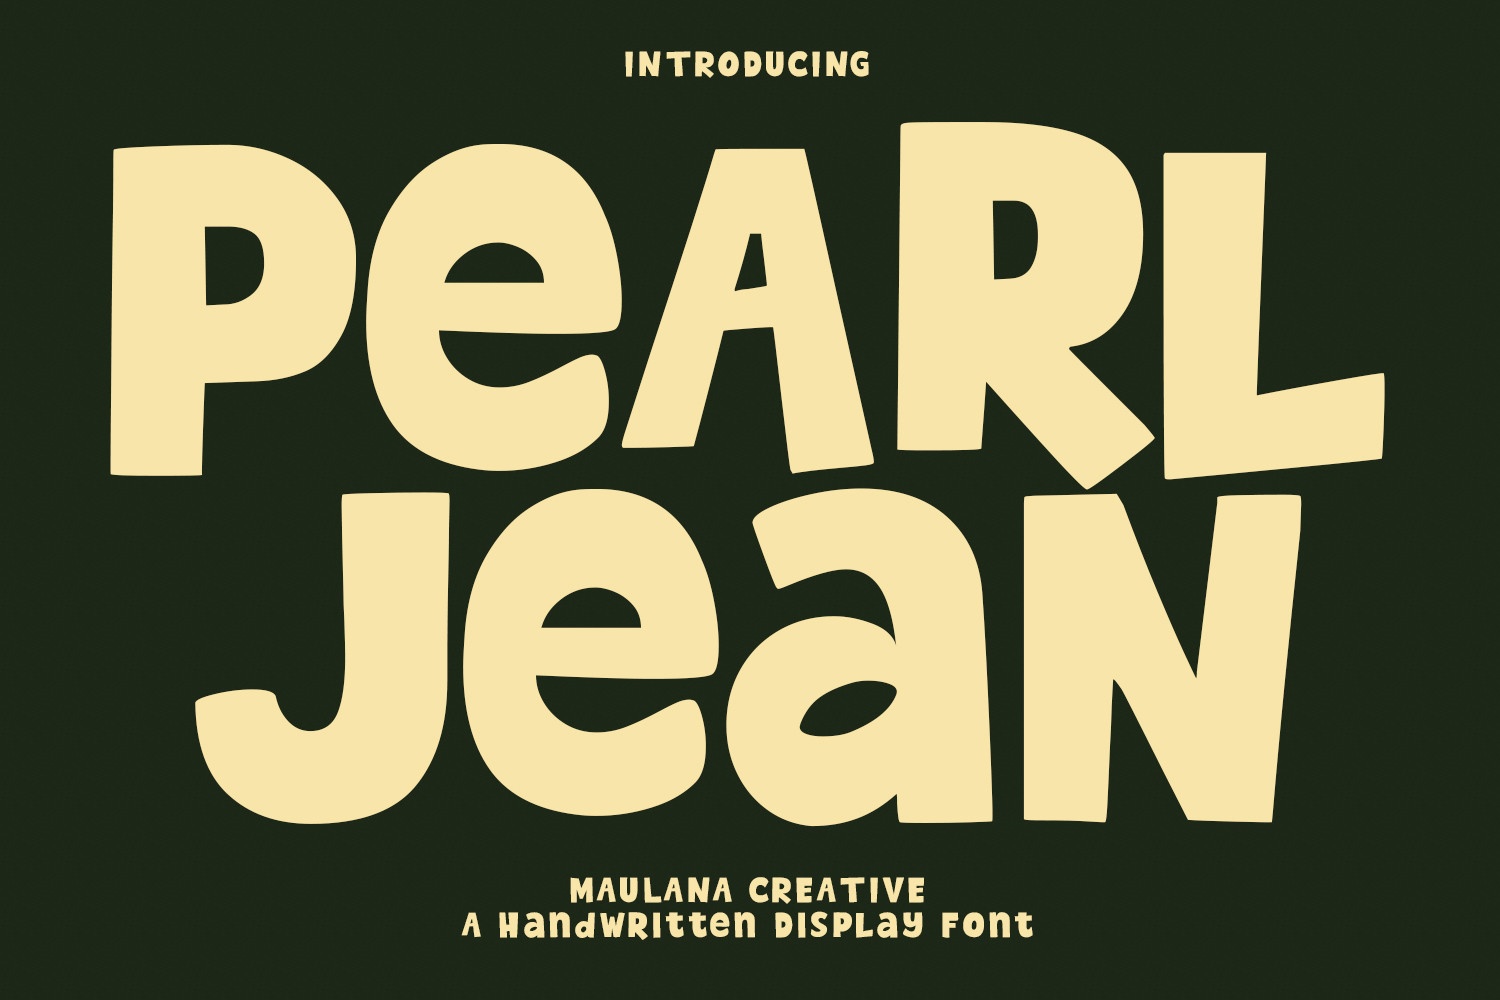 Pearl Jean